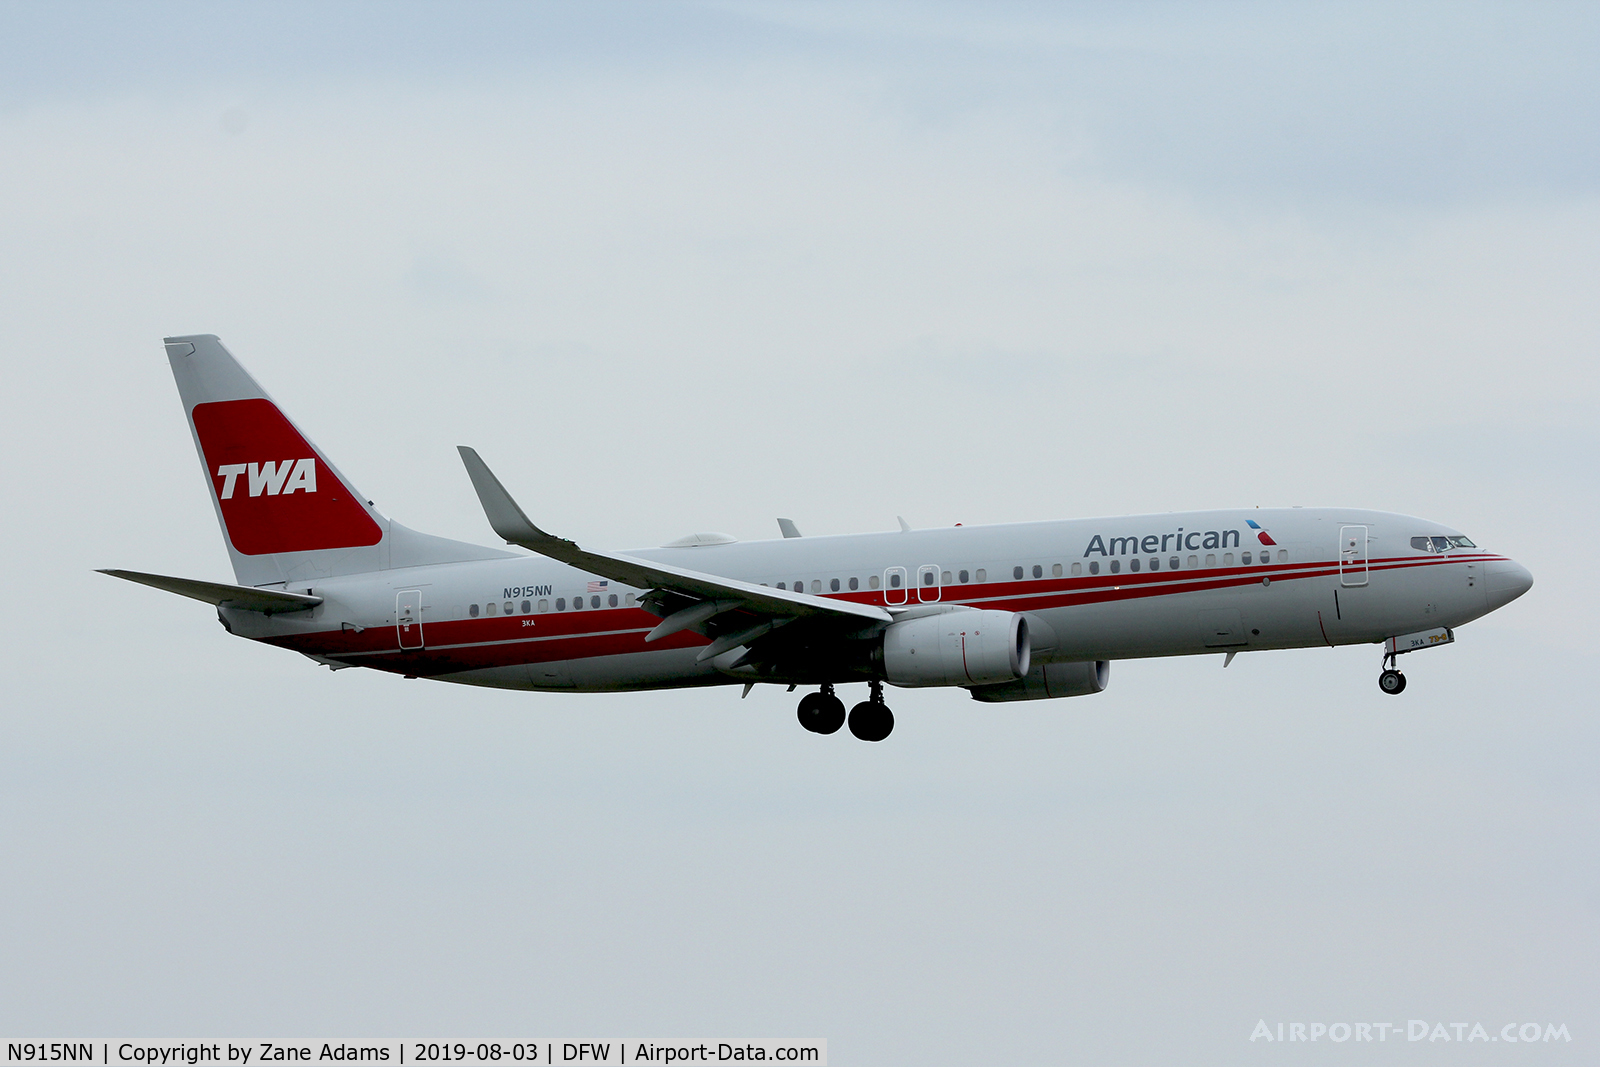 N915NN, 2013 Boeing 737-823 C/N 33227, Arriving at DFW Airport